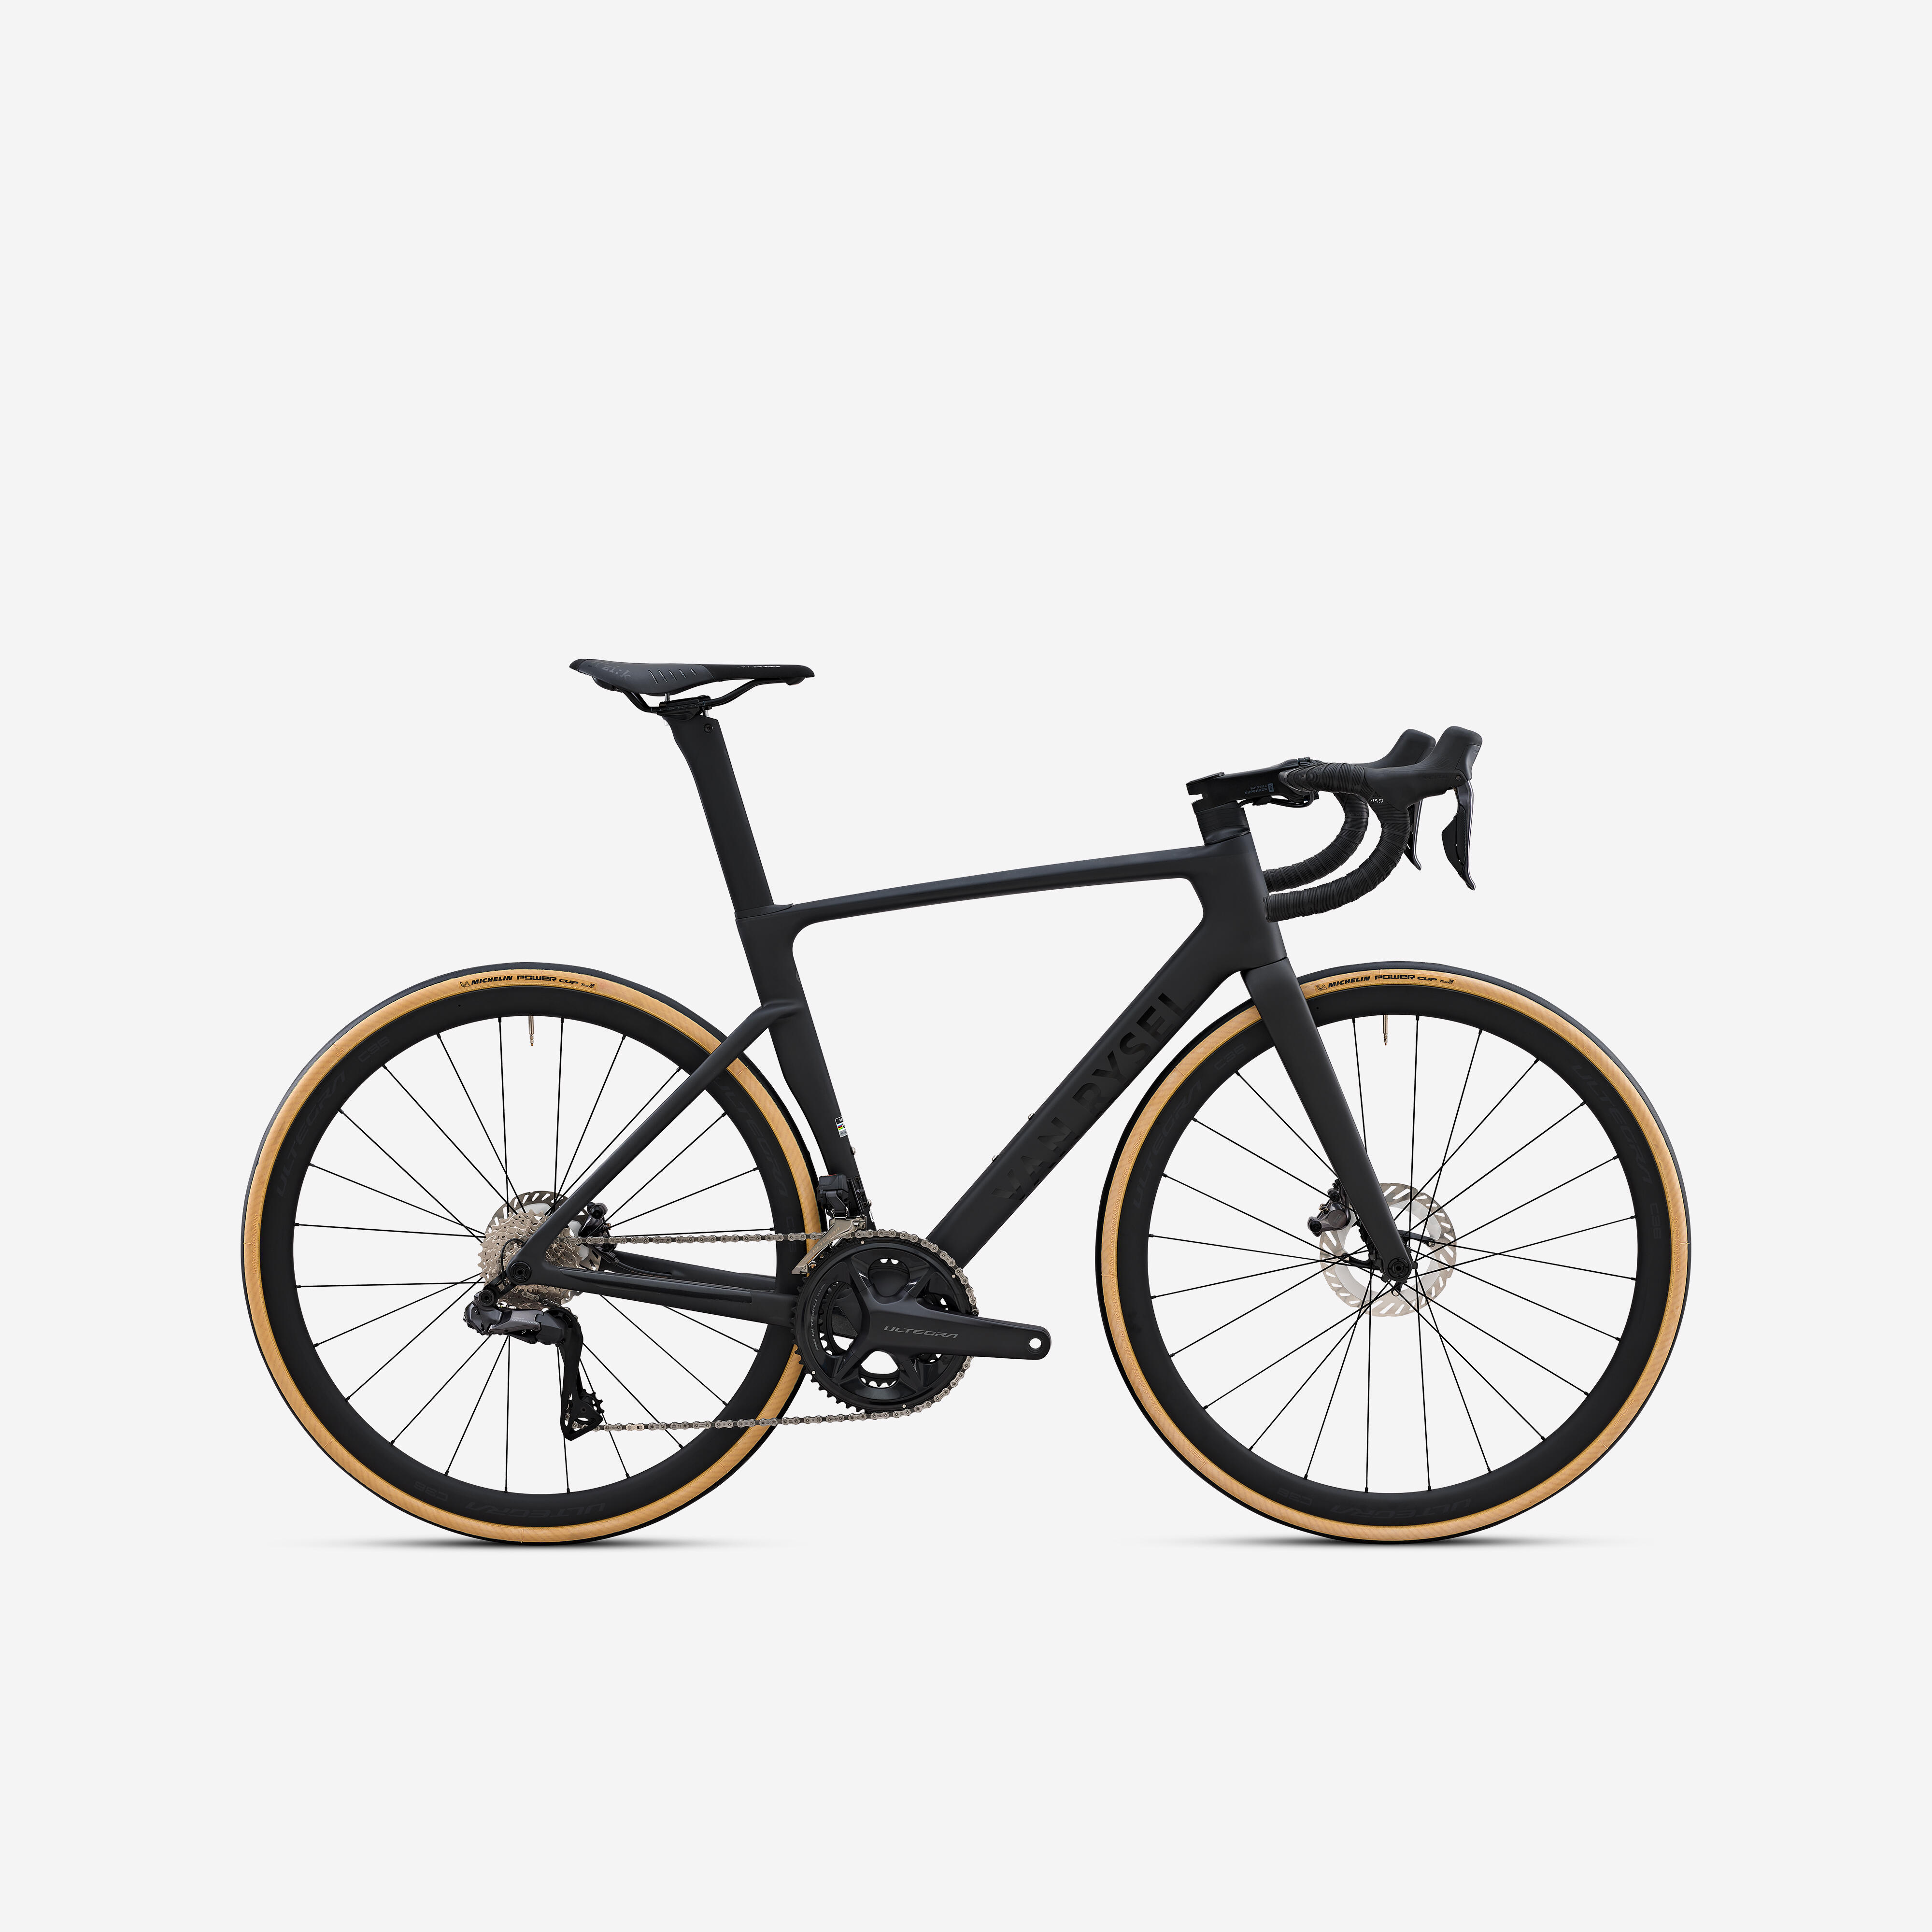 Van Rysel Road Bike Rcr Pro Shimano Ultegra Di2 With Power Sensor - Raw Carbon